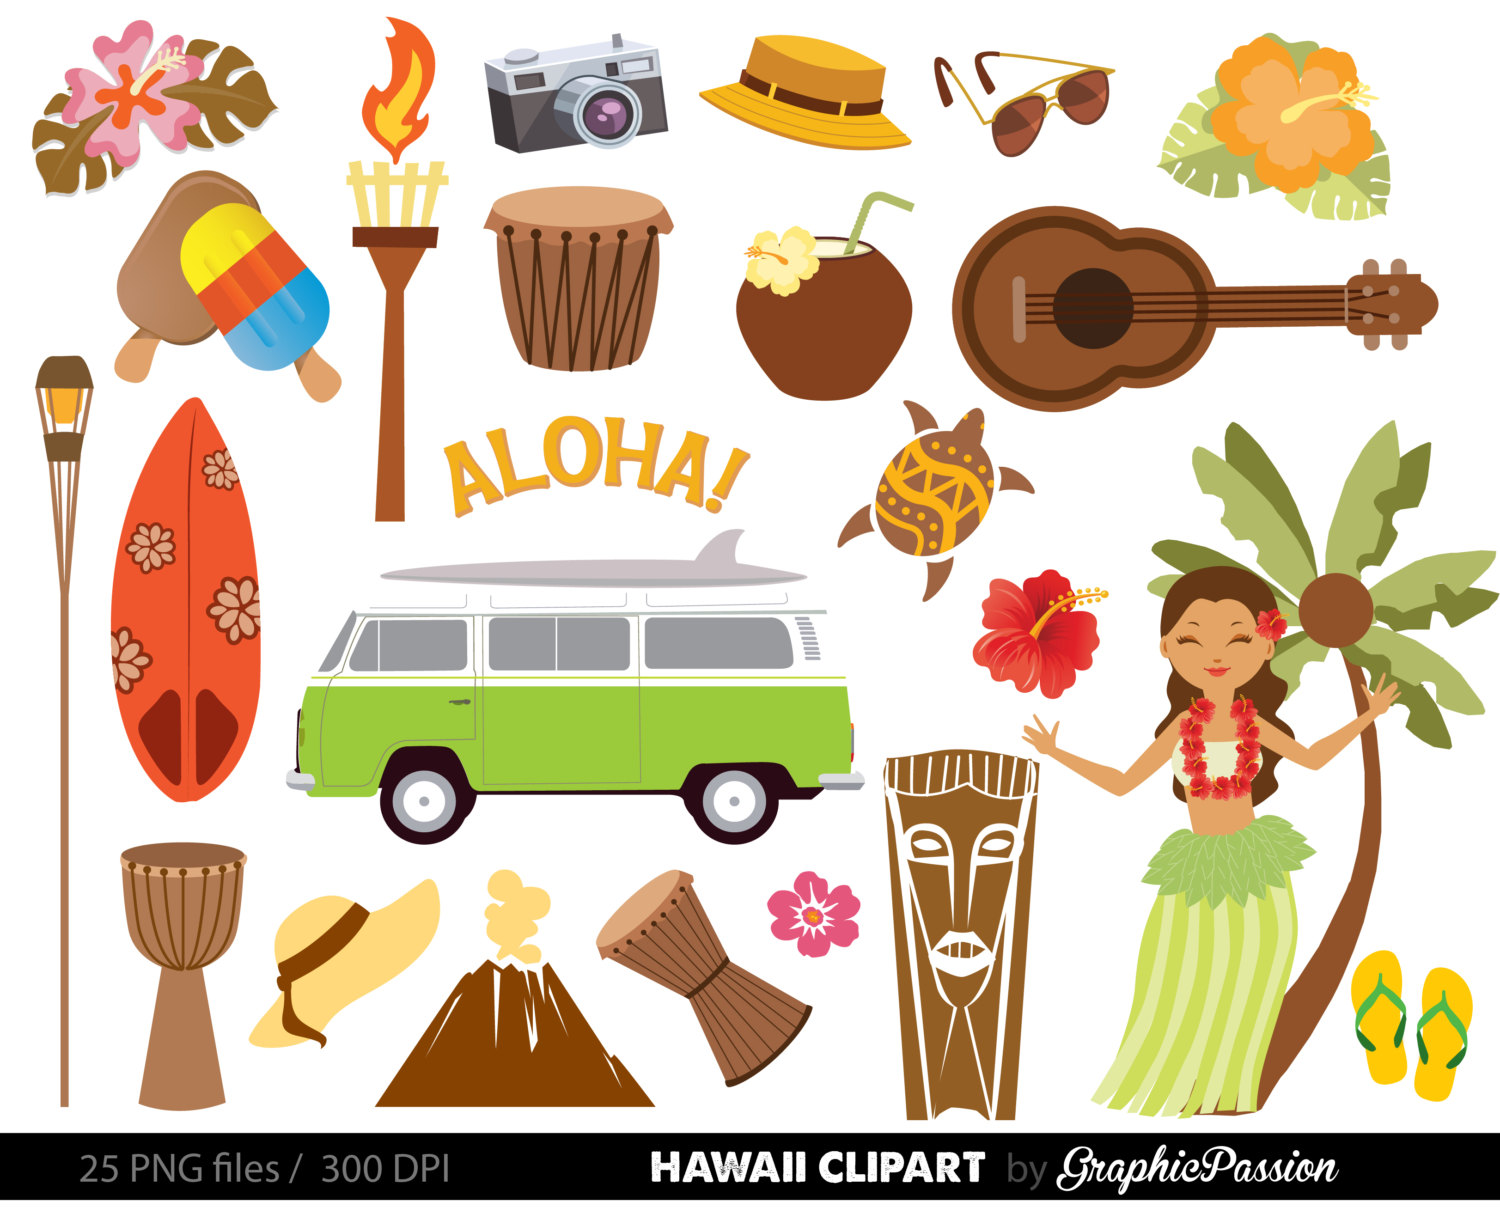 Hawaiian Luau Party clip art, - Hawaiian Images Clip Art